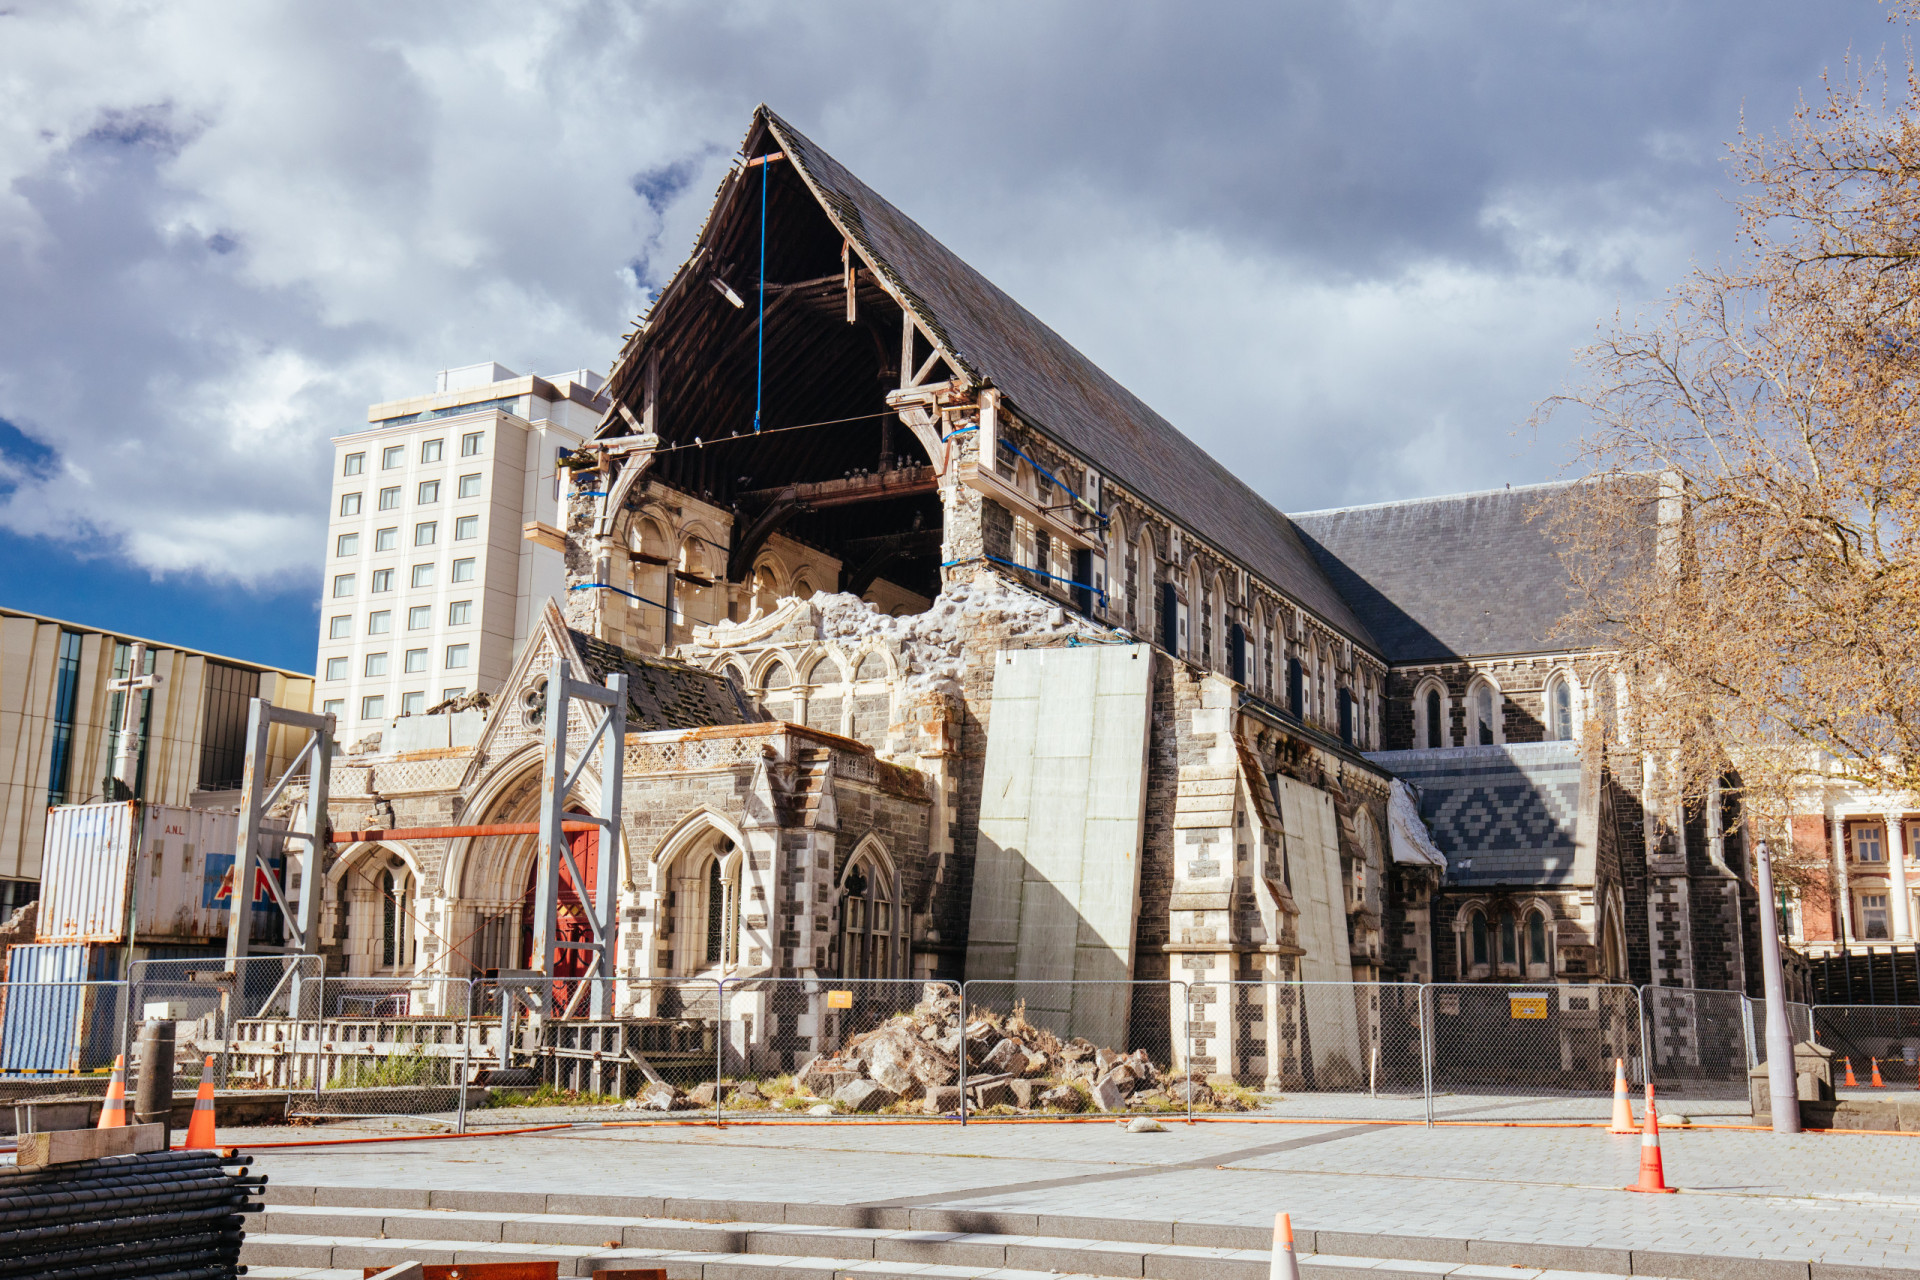 <p>En février 2011, la ville de Christchurch a été rasée par un tremblement de terre dévastateur. Au total, le gouvernement a dépensé environ 40 milliards de dollars néo-zélandais (24,7 milliards de dollars américains ou 22 milliards d'euros) pour reconstruire la ville.</p><p><a href="https://www.msn.com/fr-ca/community/channel/vid-7xx8mnucu55yw63we9va2gwr7uihbxwc68fxqp25x6tg4ftibpra?cvid=94631541bc0f4f89bfd59158d696ad7e">Suivez-nous et accédez tous les jours à du contenu exclusif</a></p>